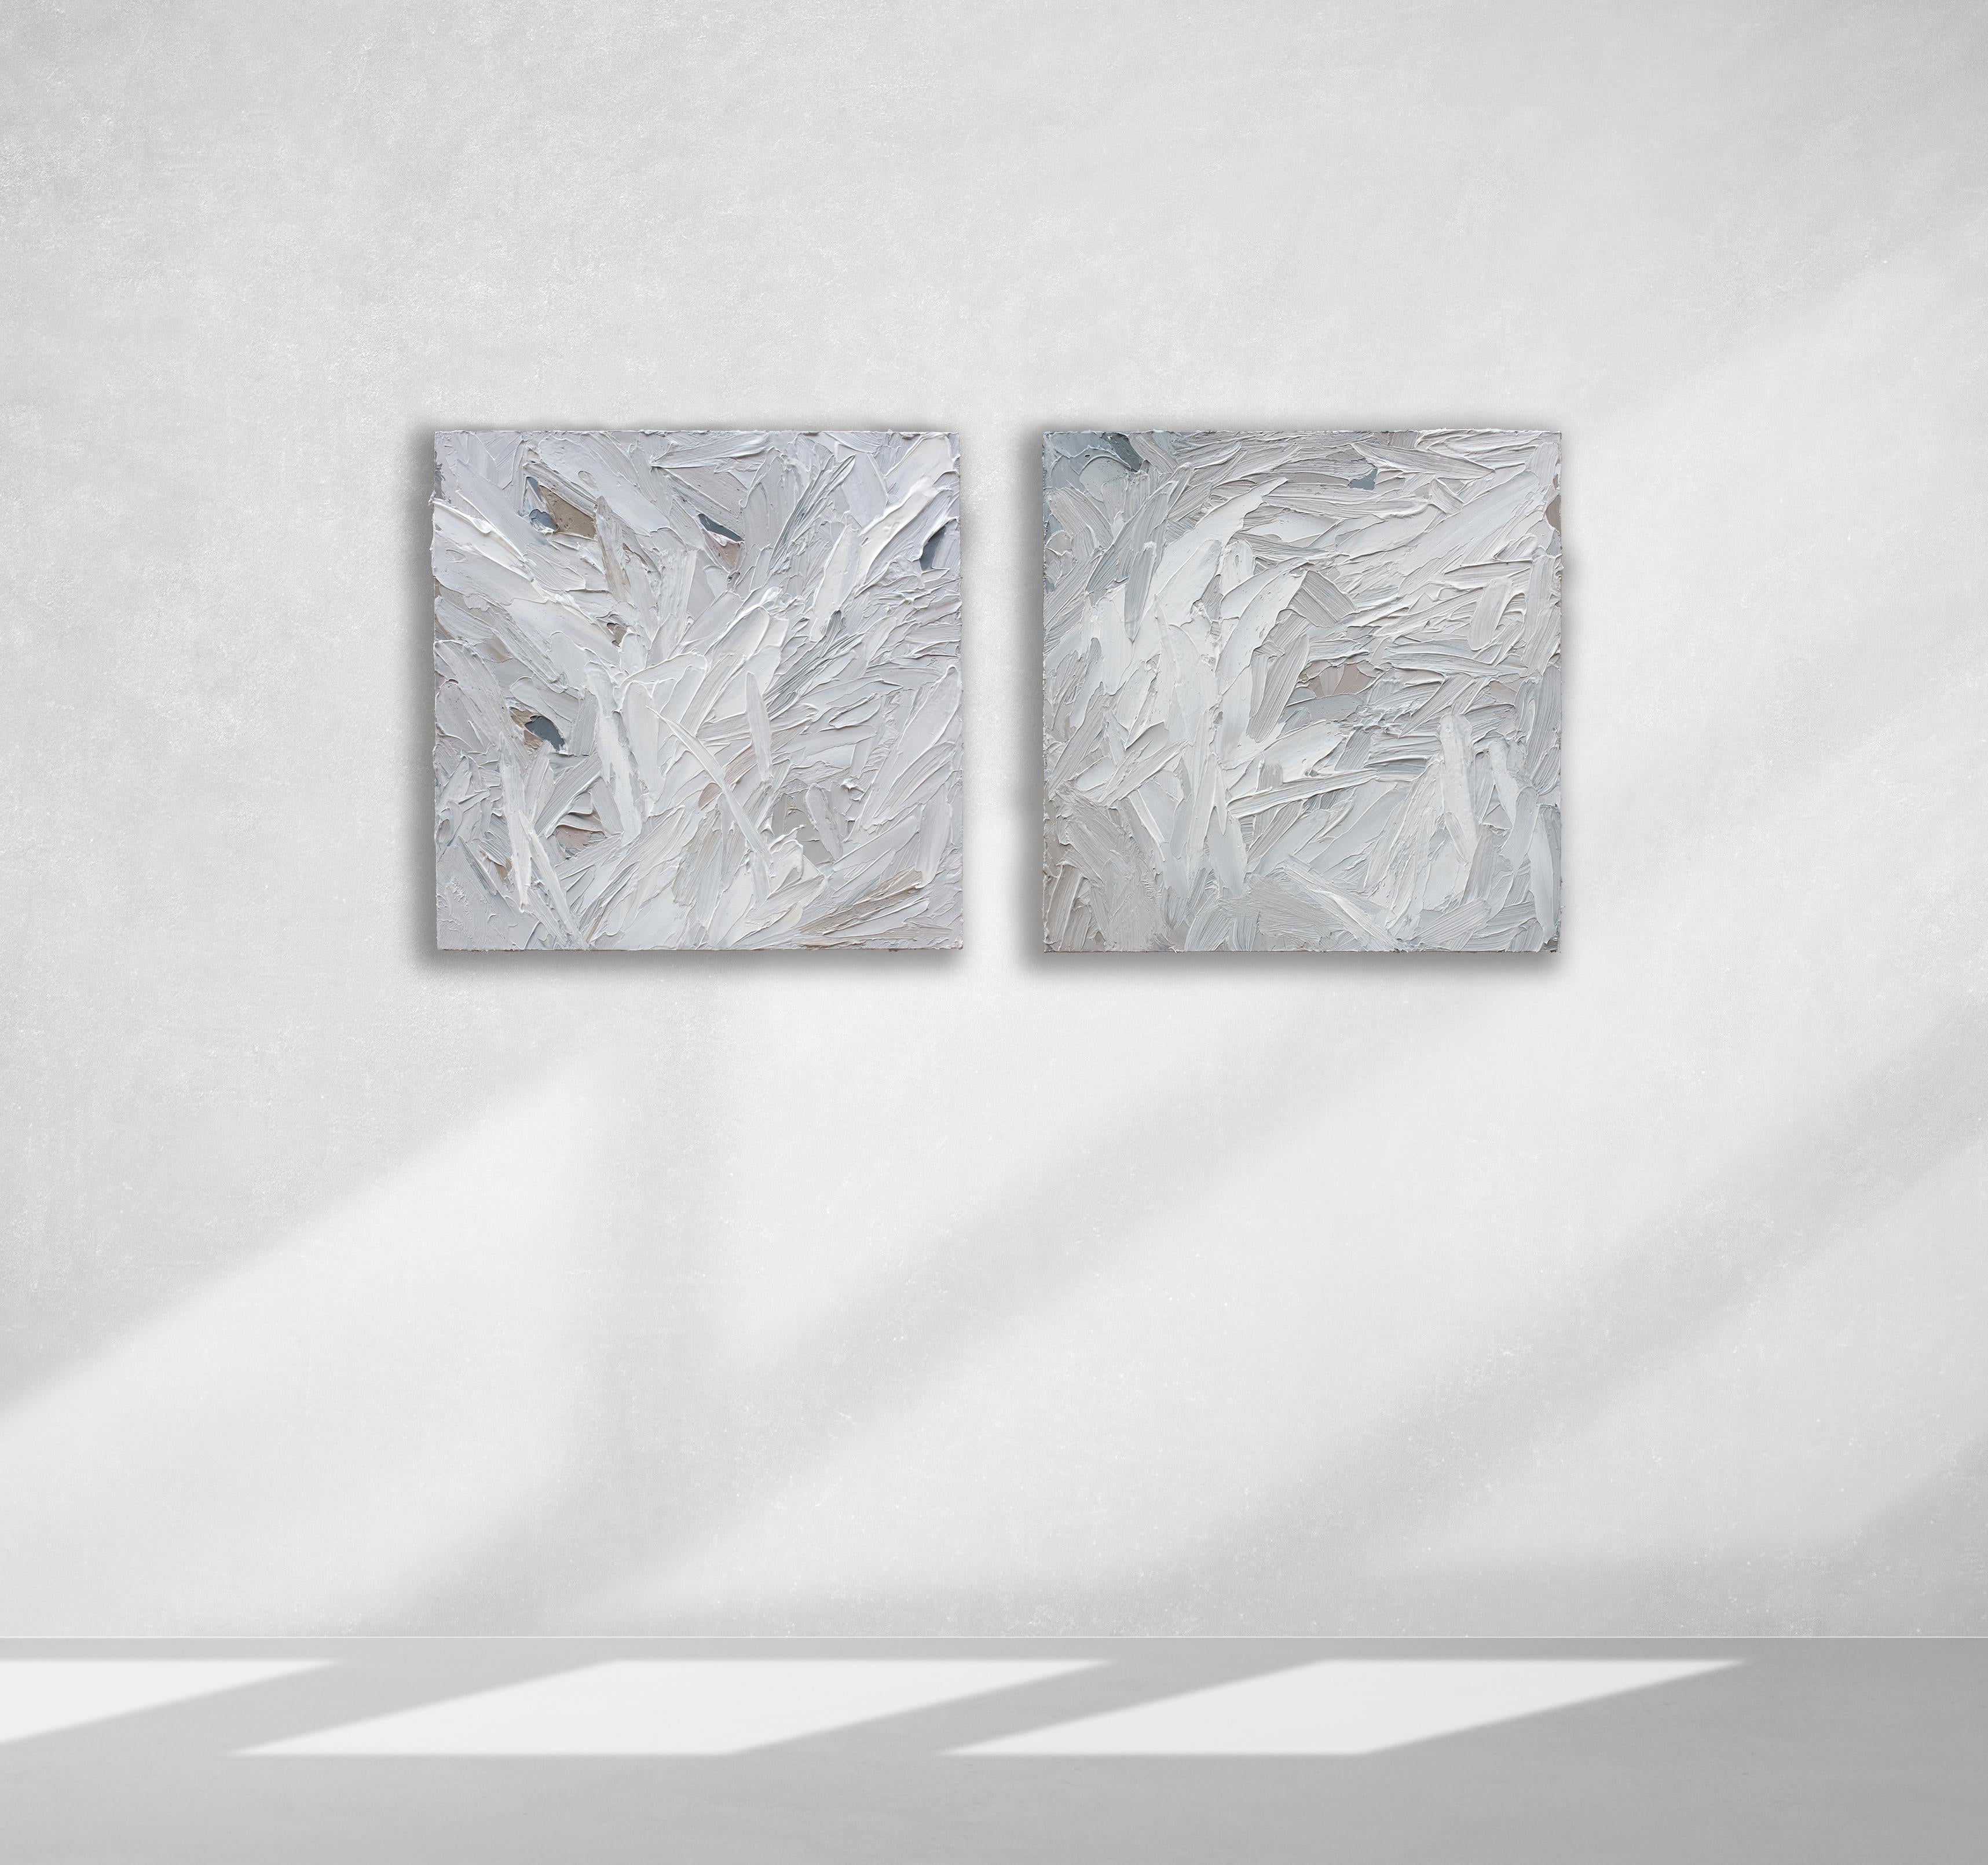 Dieses Paar strukturierter abstrakter Gemälde von Teodora Guererra zeichnet sich durch eine helle, graue Farbpalette mit subtilen warmen Akzenten in der gesamten Komposition aus. Der Künstler schichtet mit einem Spachtel dicke Farbstriche über die